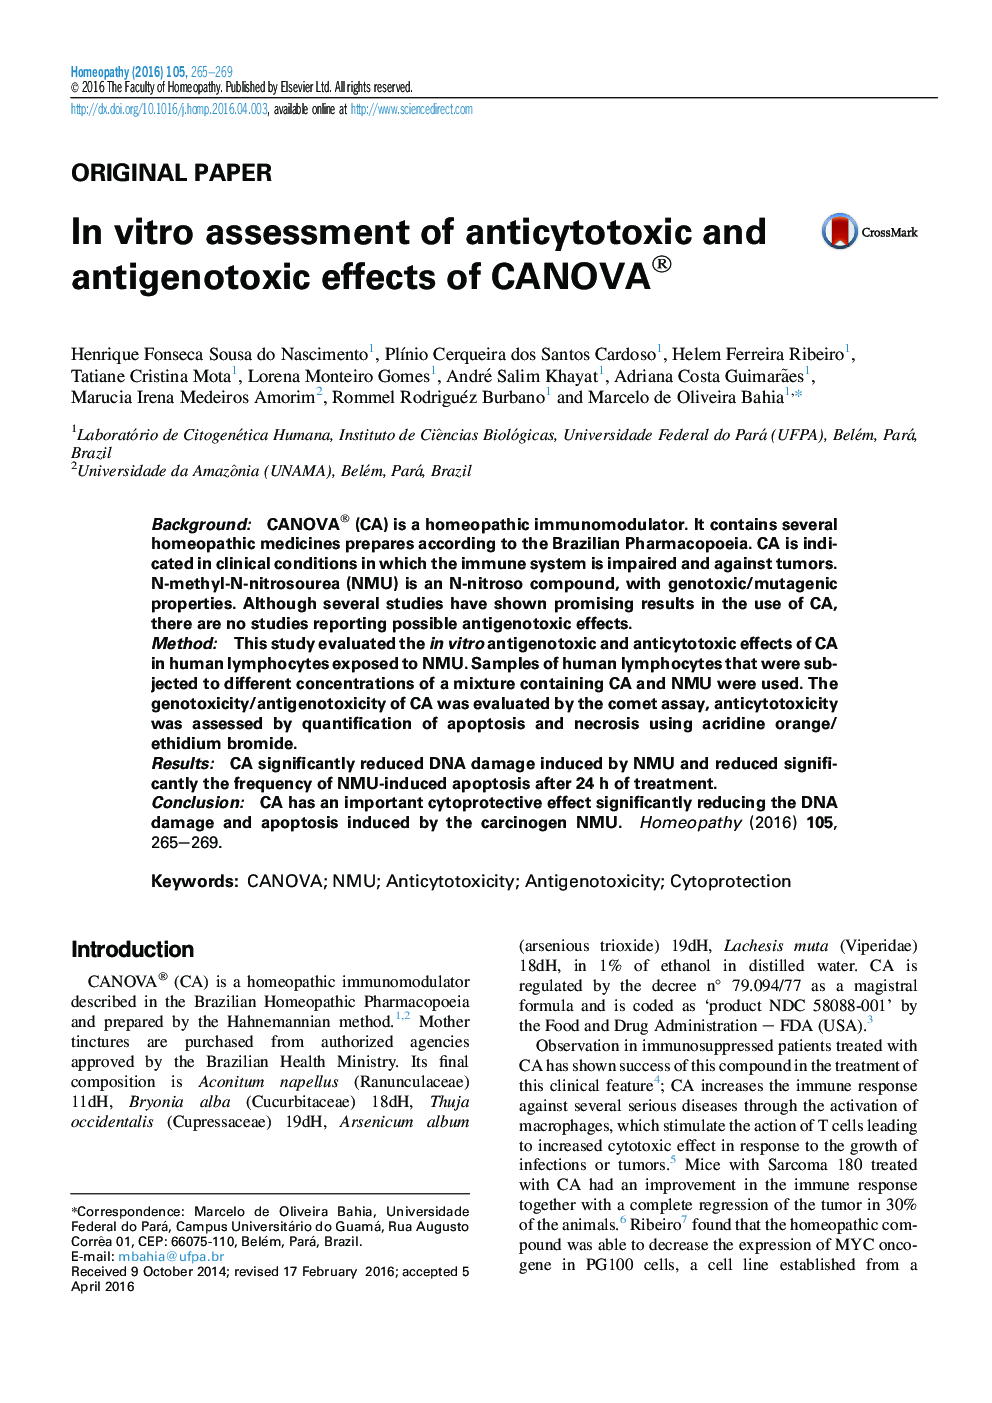 ارزیابی شرایط آزمایشگاهی از اثرات anticytotoxic و antigenotoxic از CANOVA®